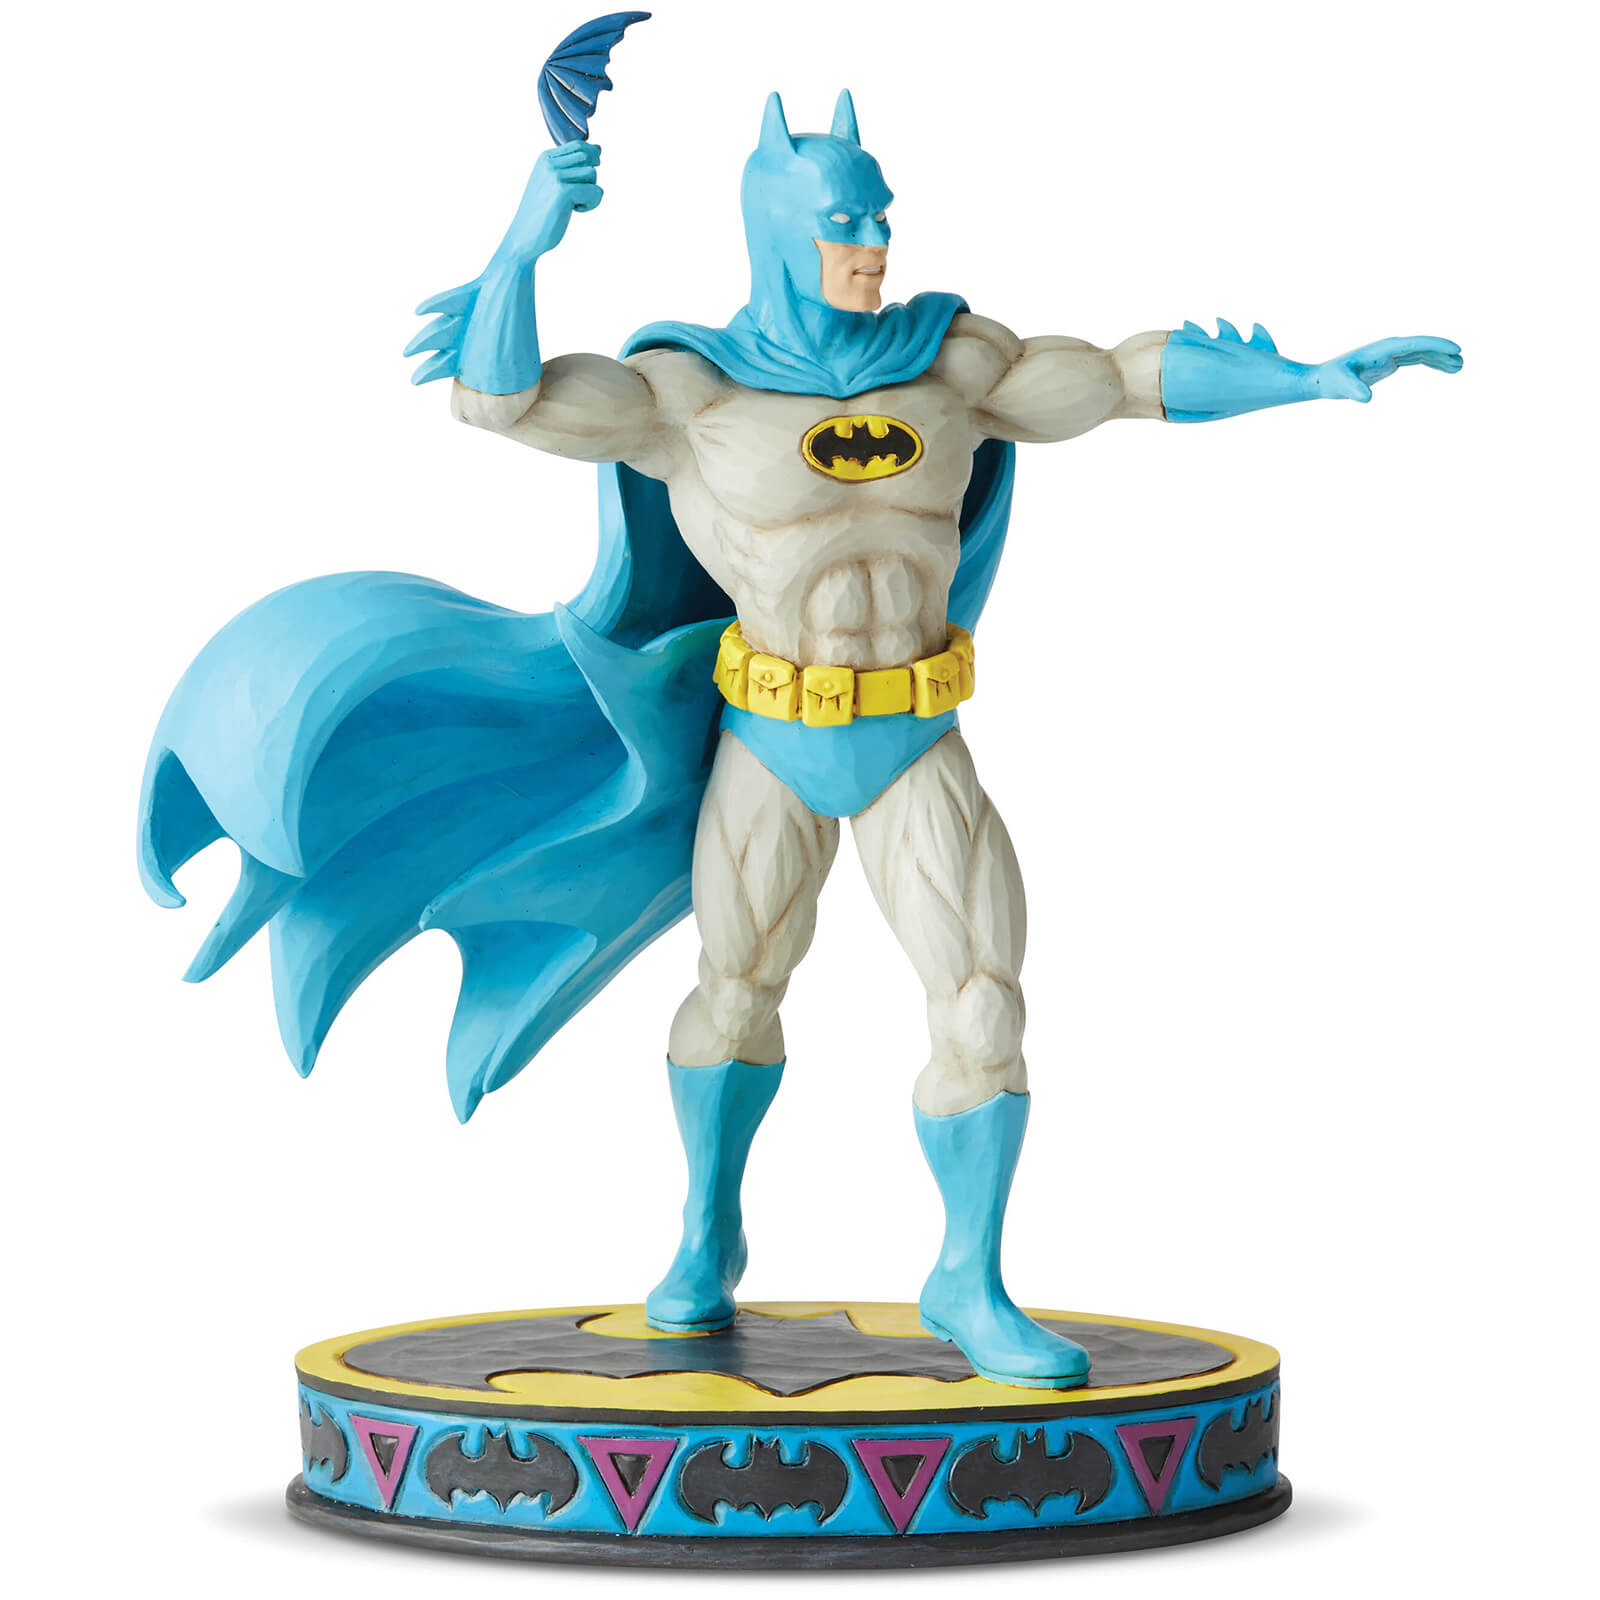 DC Comics by Jim Shore Batman Silver Age Figurine 19.0cm